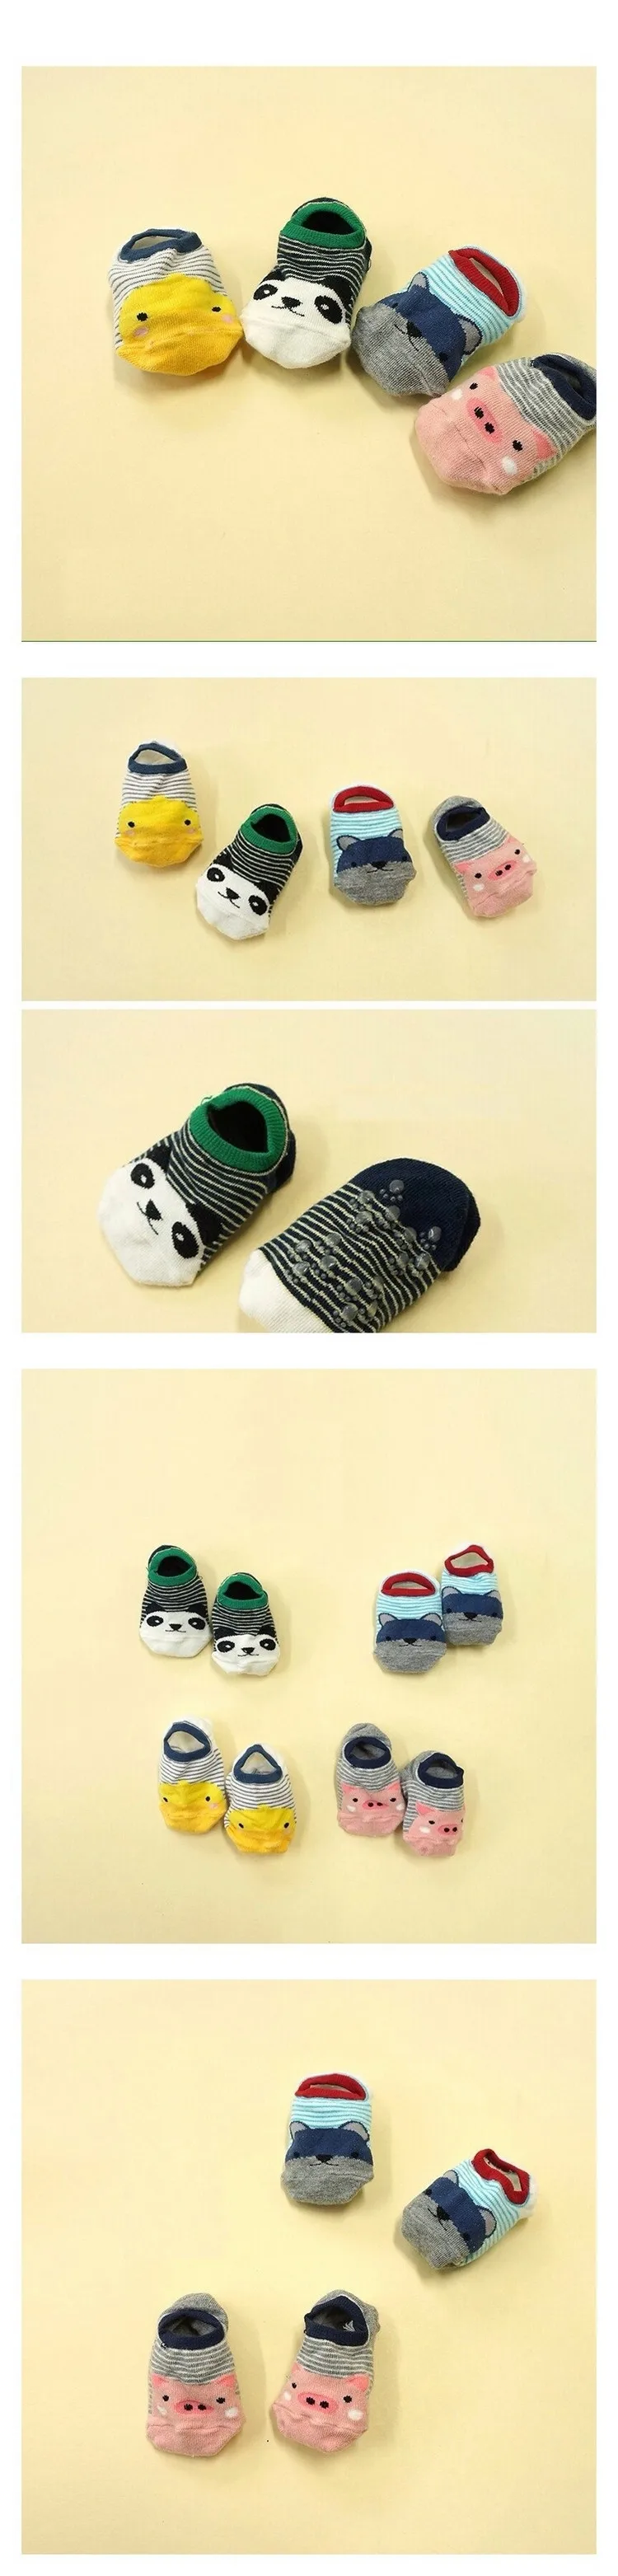 Bosudhsou/новые детские носки с персонажами из мультфильмов, нескользящие носки для детей 0-4 лет,, цвет на выбор, C20